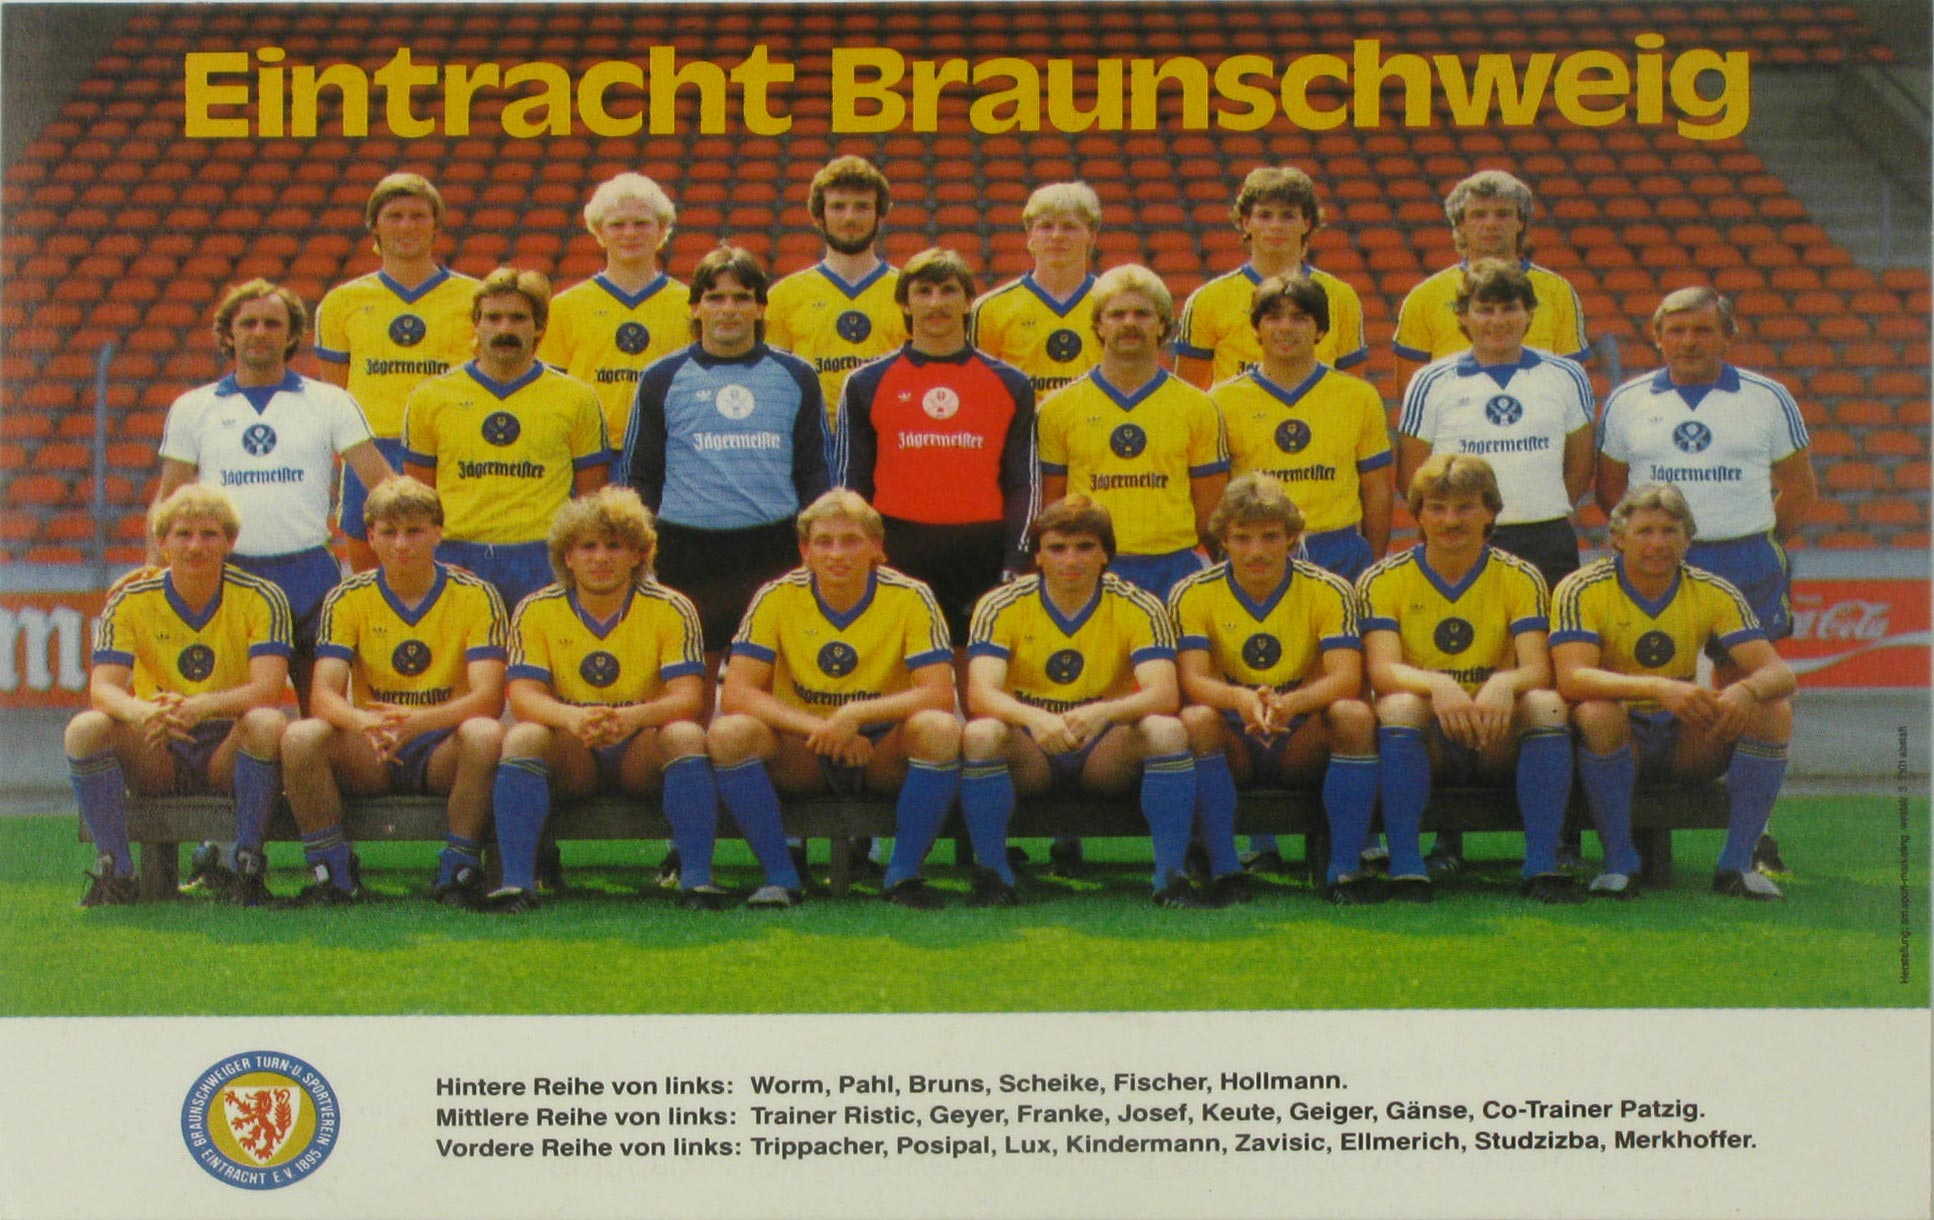   Mannschaftskarte Eintracht Braunschweig um 1984 